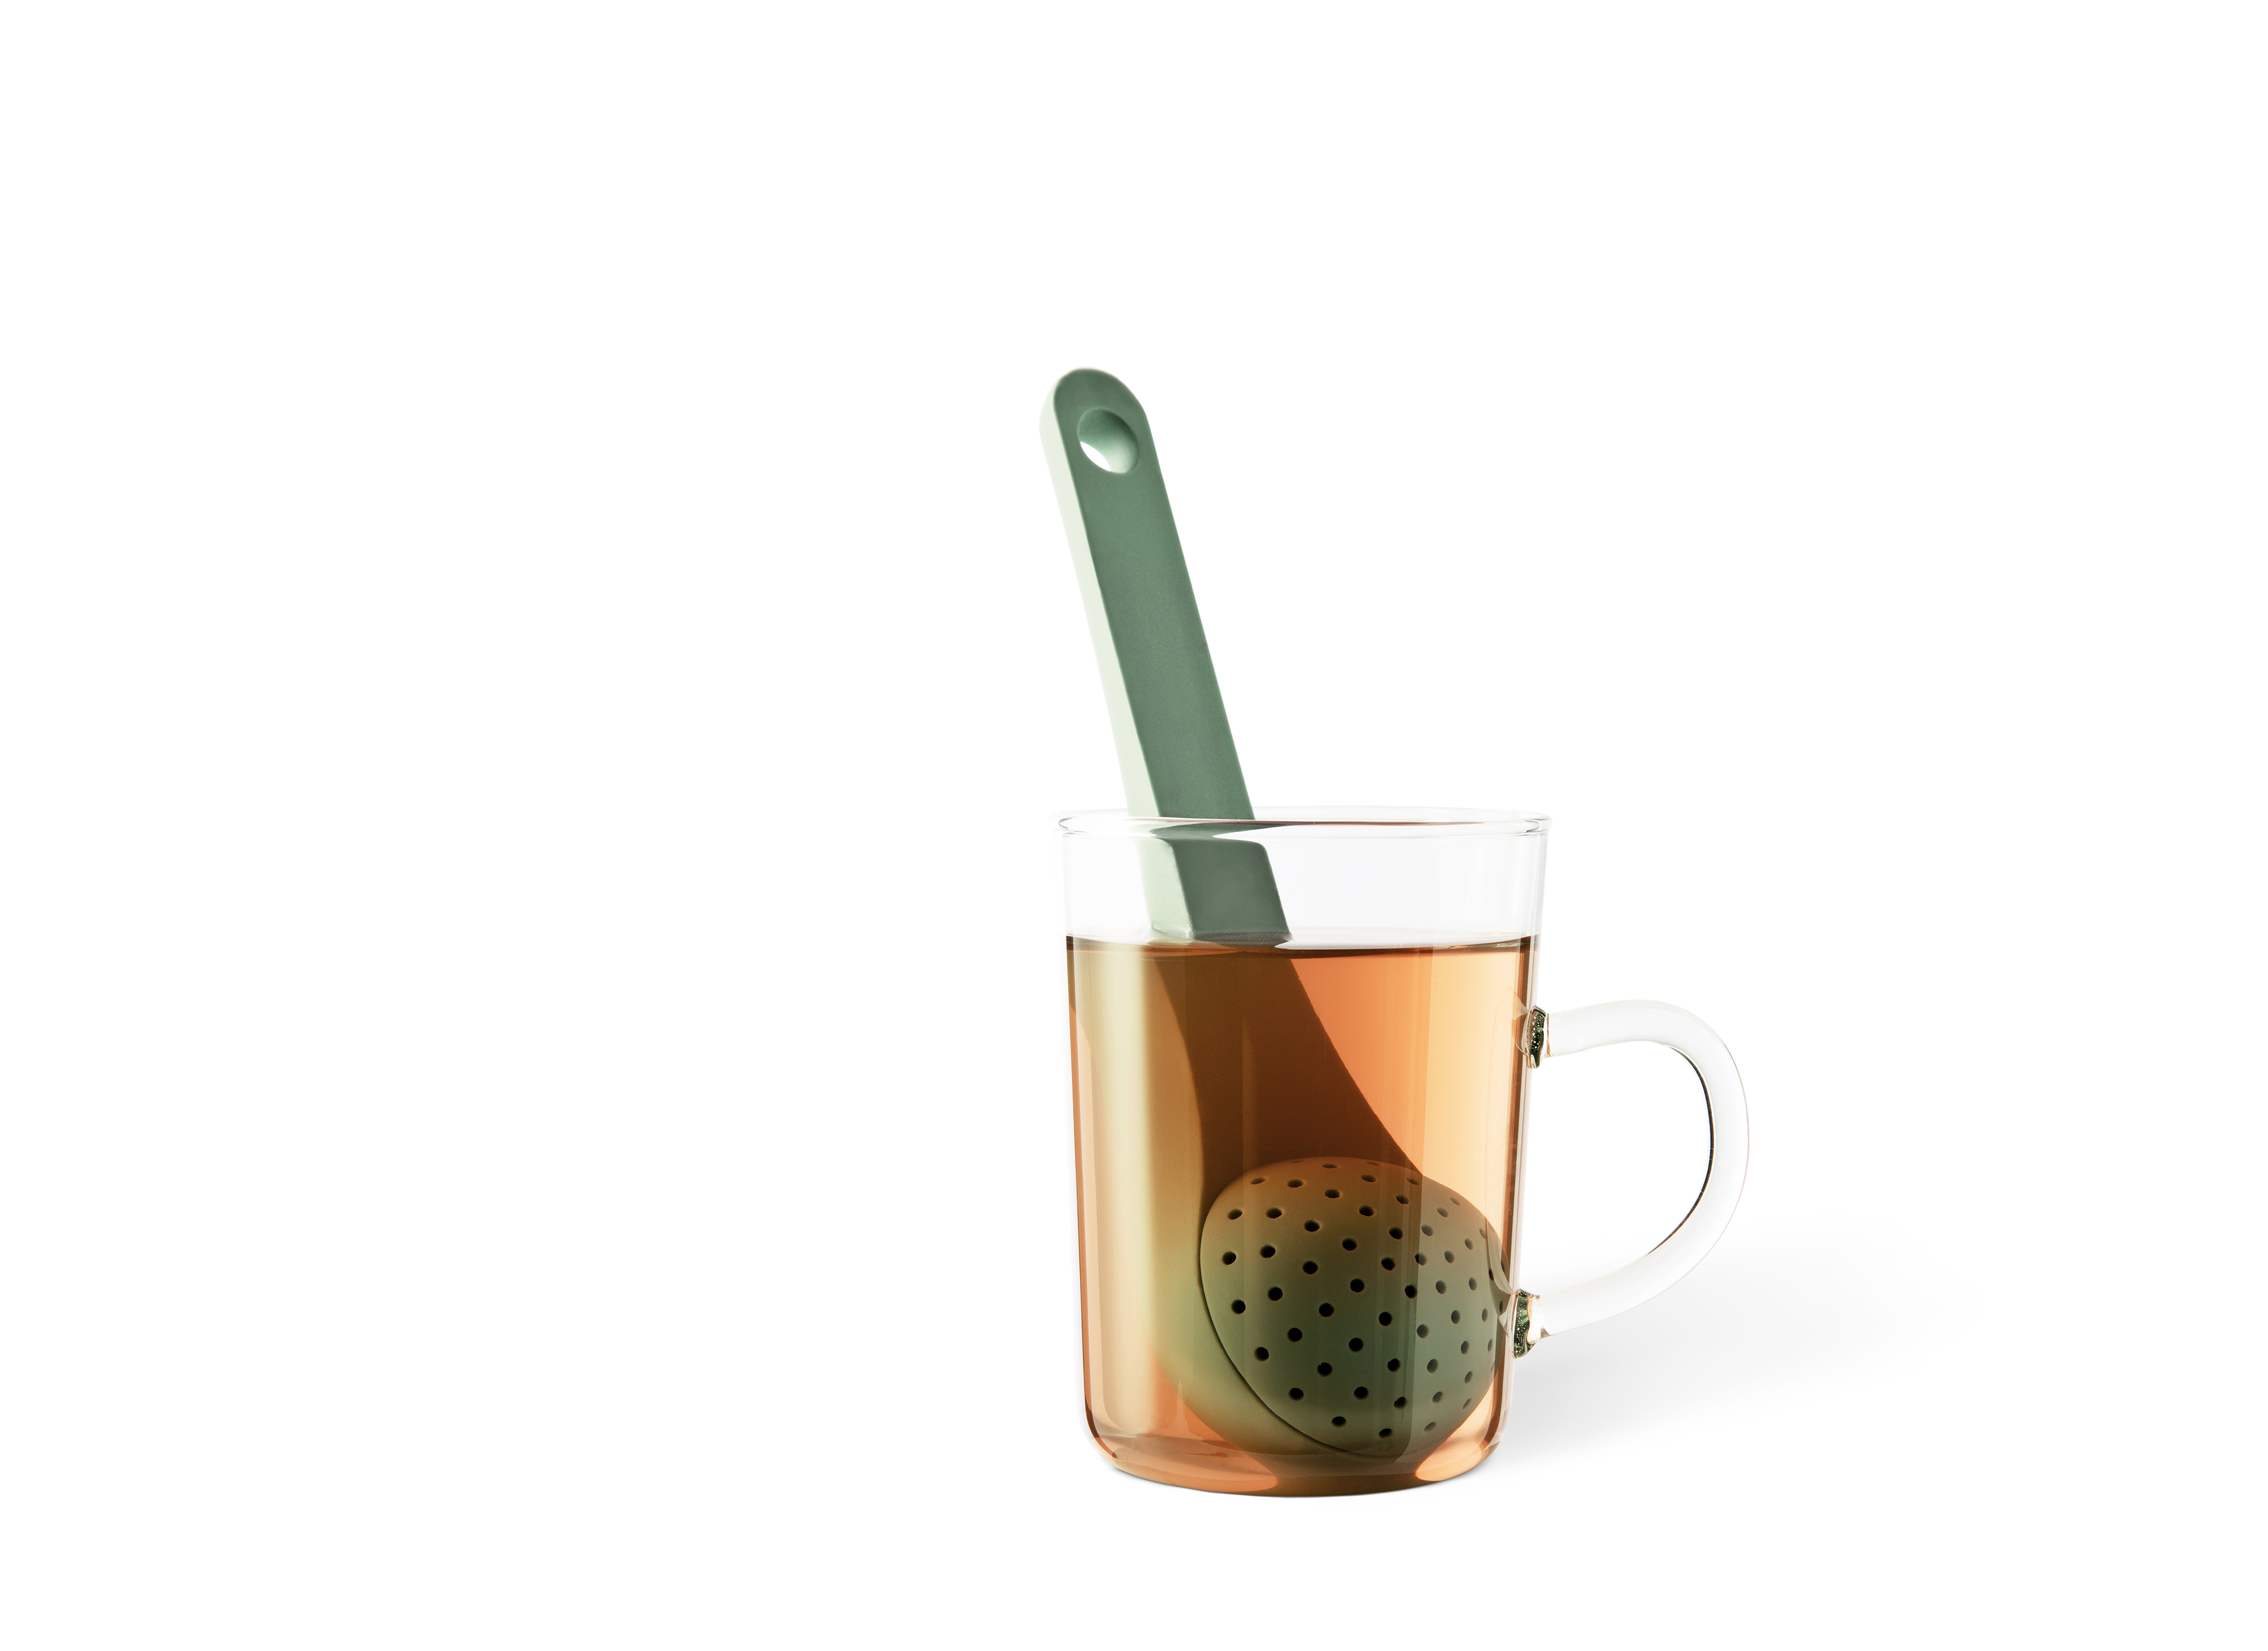 Spoon tea infuser